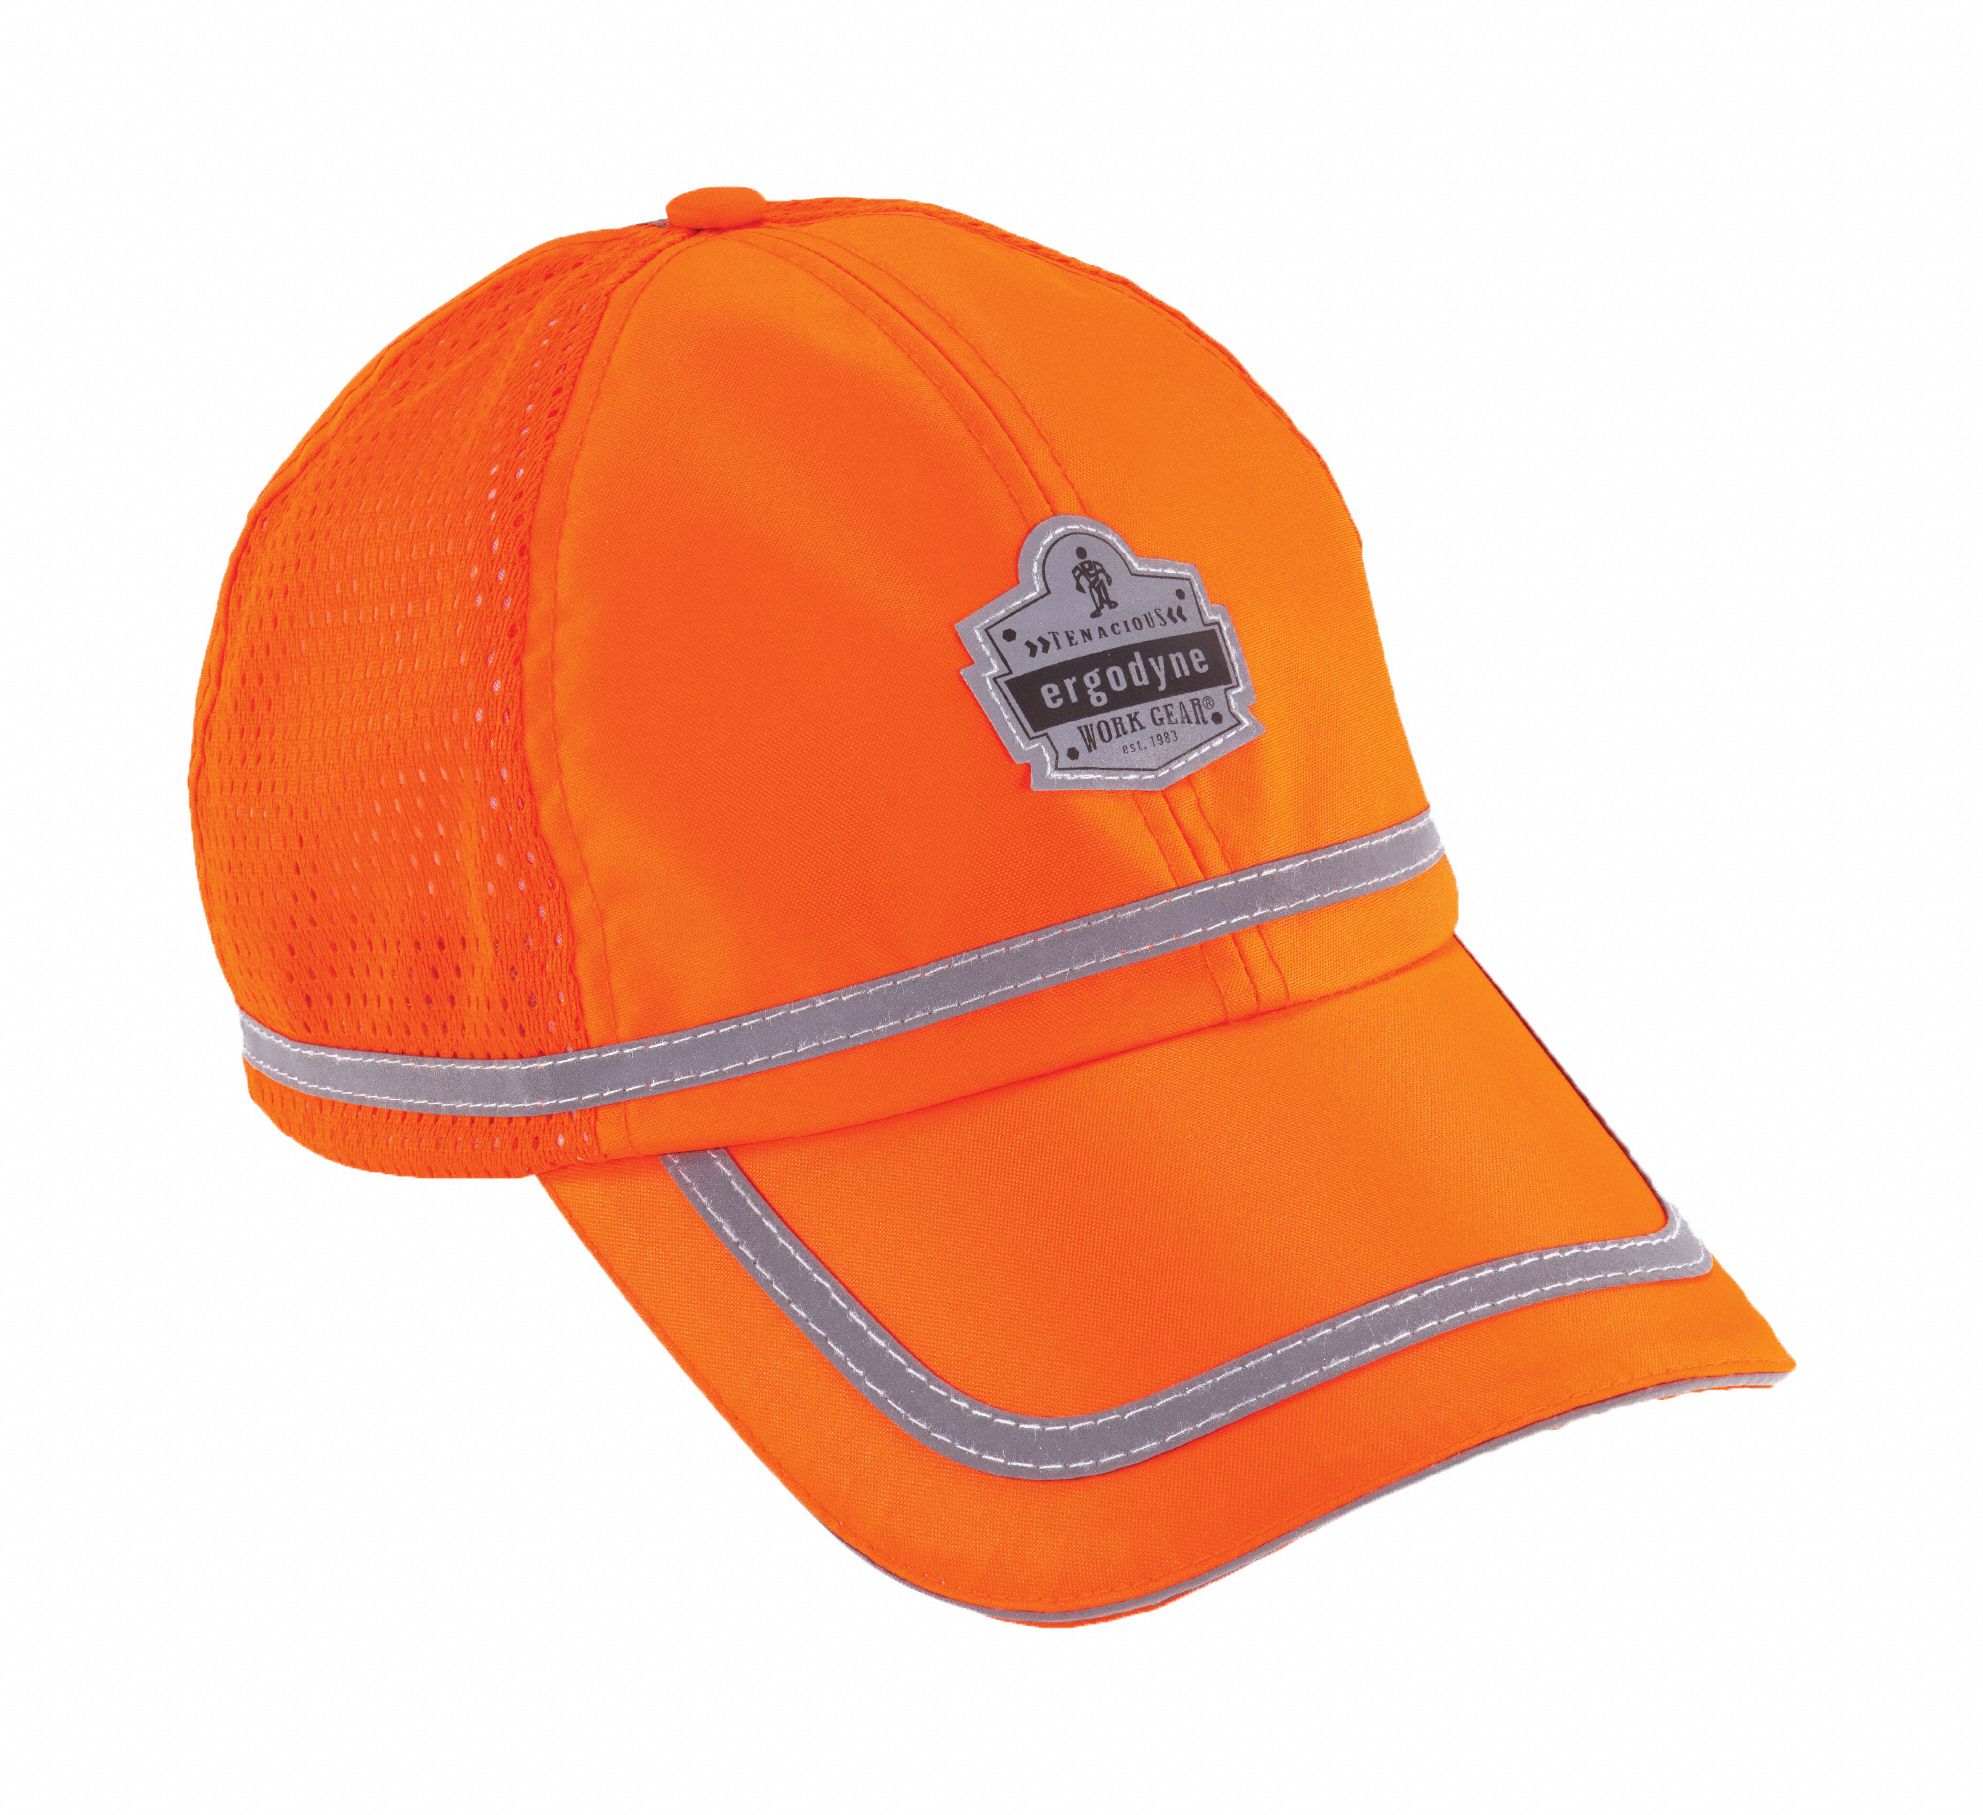 Baseball Cap: Orange, Universal, Baseball Hat Hat, Polyester, Gen Purpose